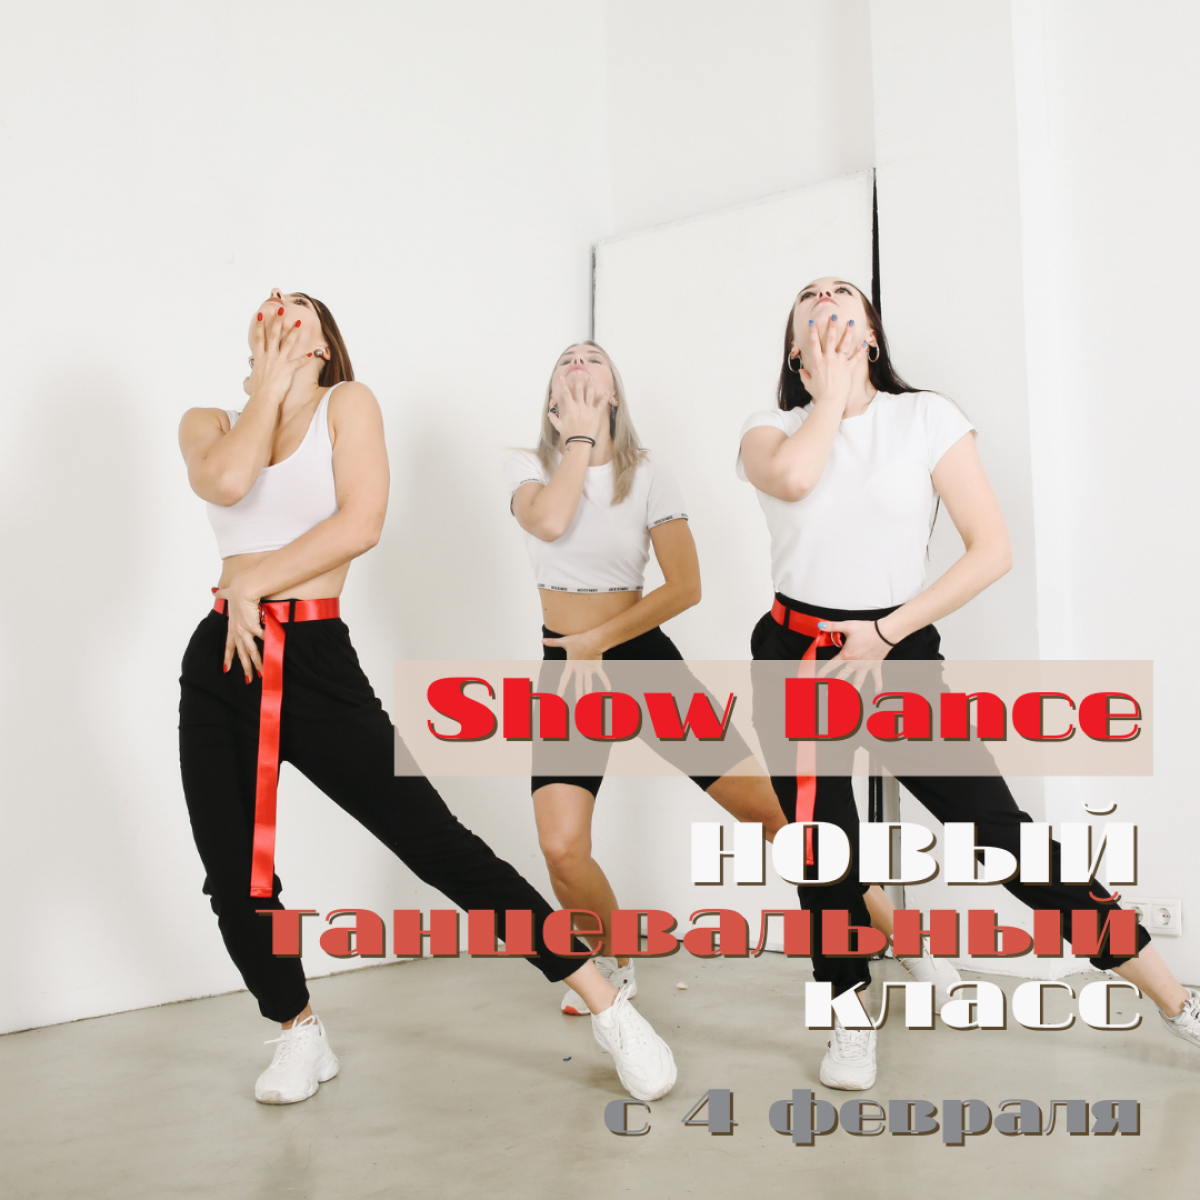 Show Dance - НОВЫЙ танцевальный класс!